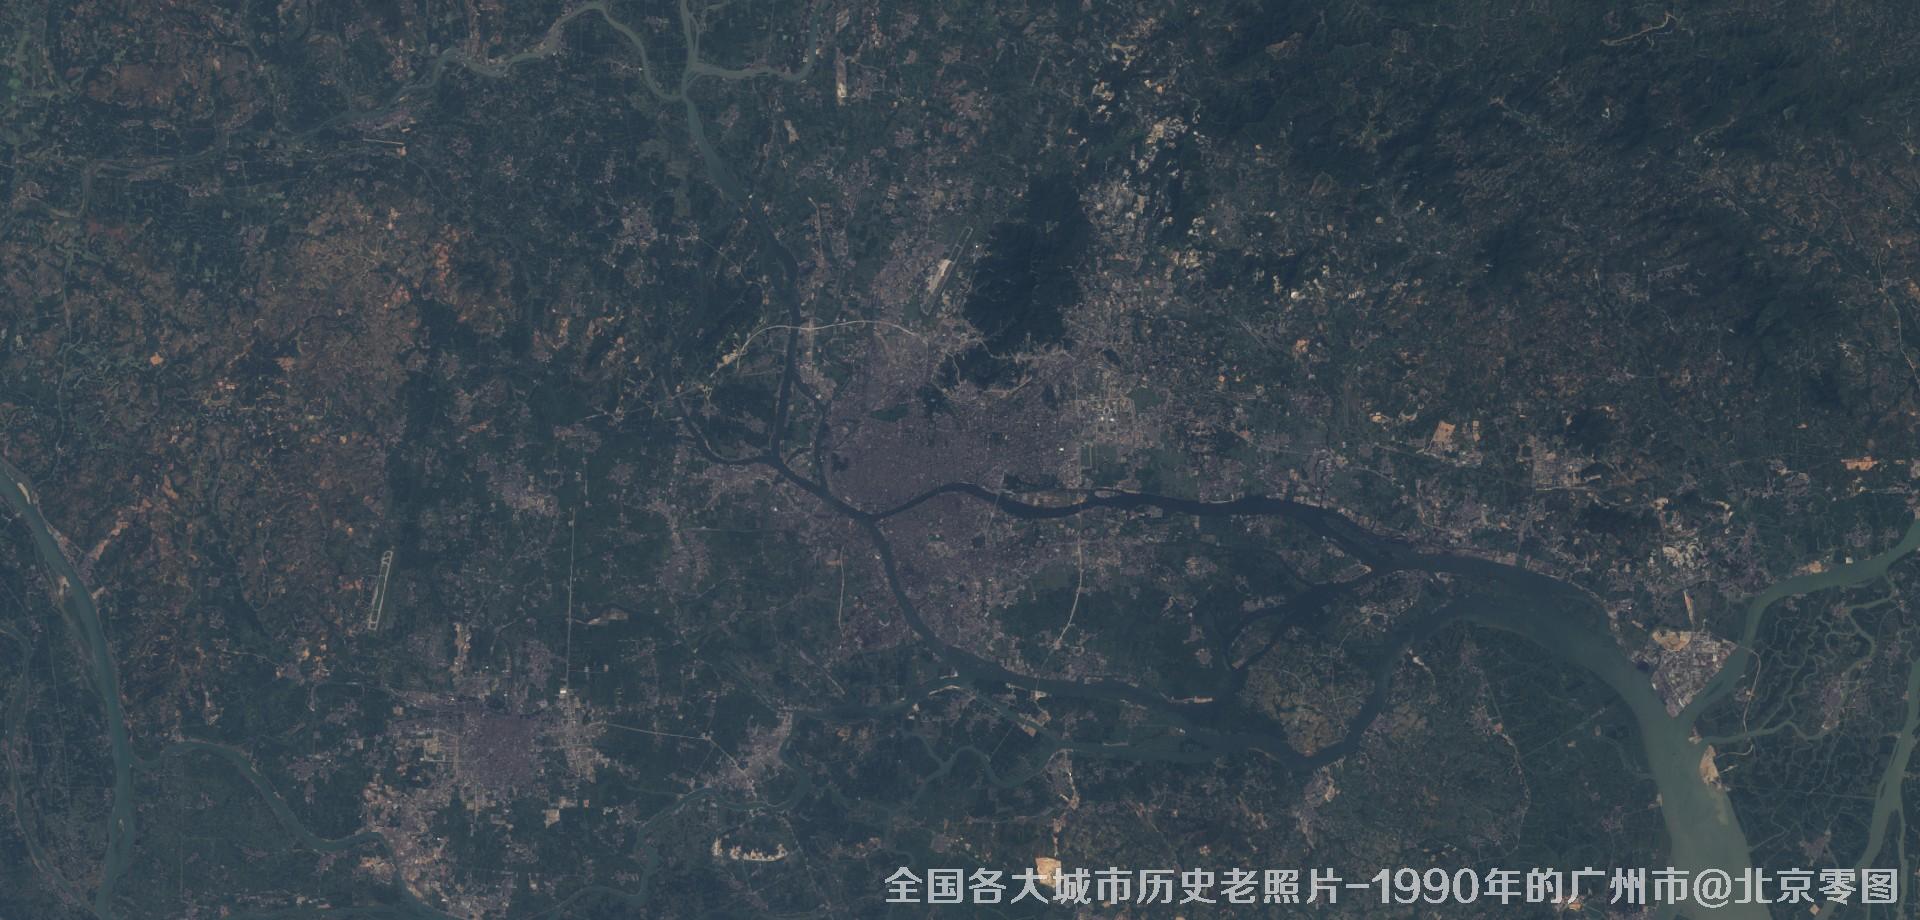 美国Landsat卫星拍摄的1990年的广东省广州市历史卫星影像图